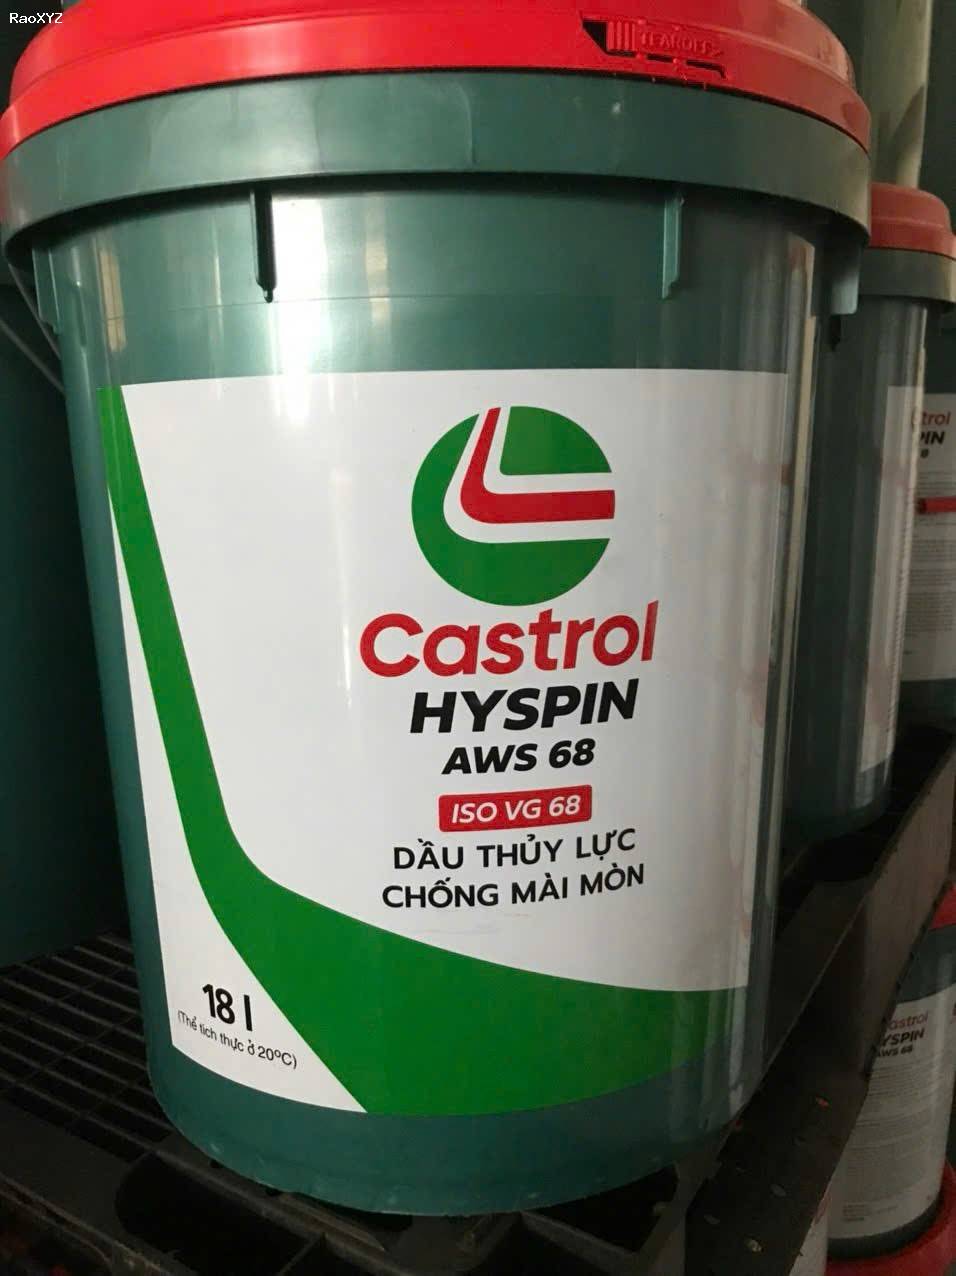 Đại lý mua bán dầu nhớt thủy lực Castrol Hyspin AWS 68 chính hãng, giao hàng tận nơi tại Bình Chánh, TPHCM.